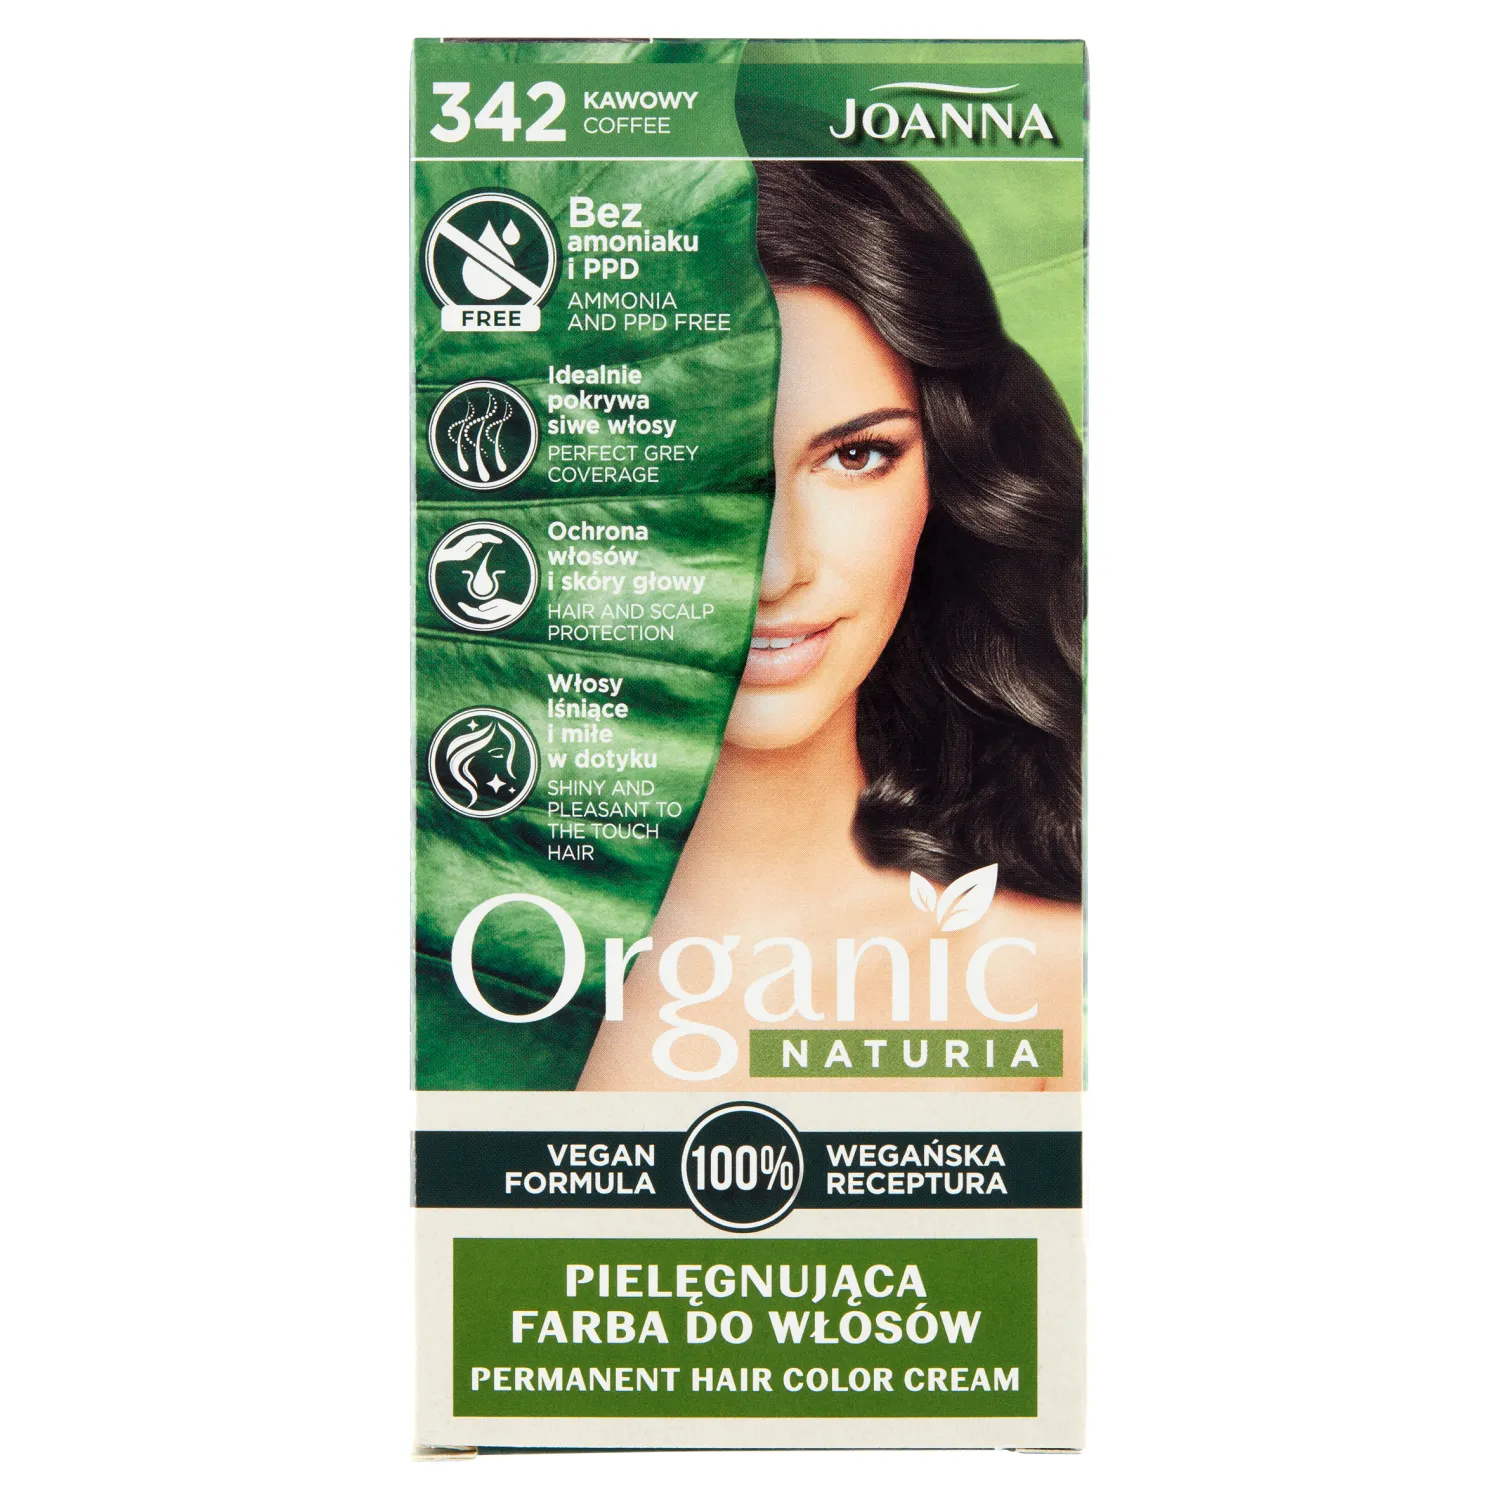 Joanna Naturia Organic Vegan farba do włosów, kawowy 342, 148 g